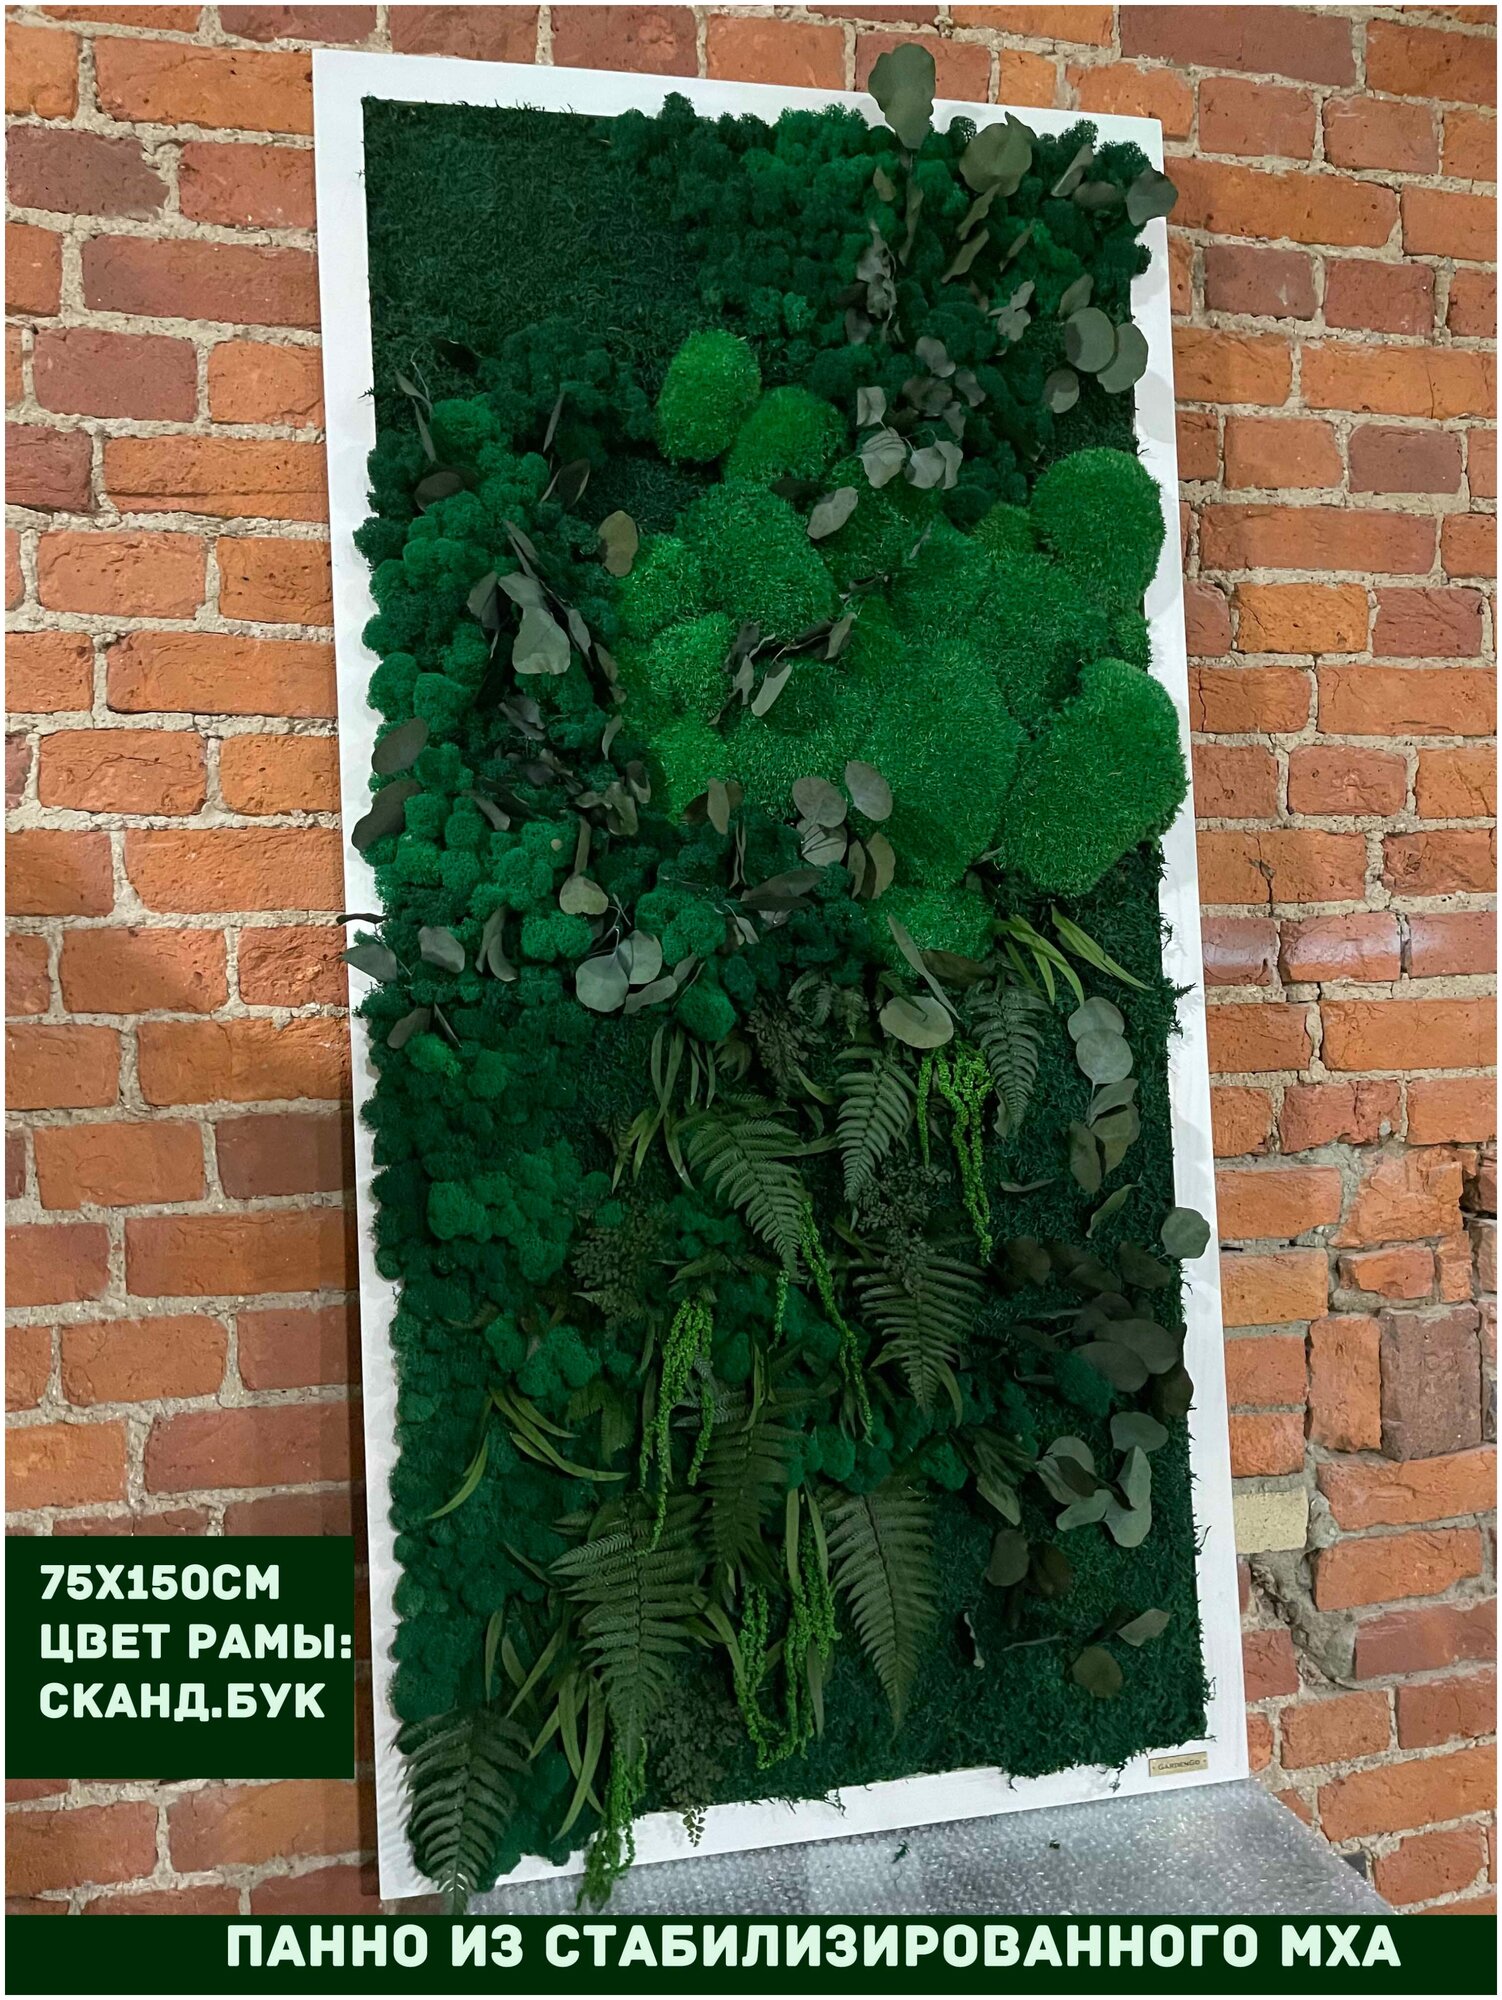 Панно из стабилизированно мха GardenGo в рамке цвета скандинавский бук, 75х150 см, цвет мха зеленый